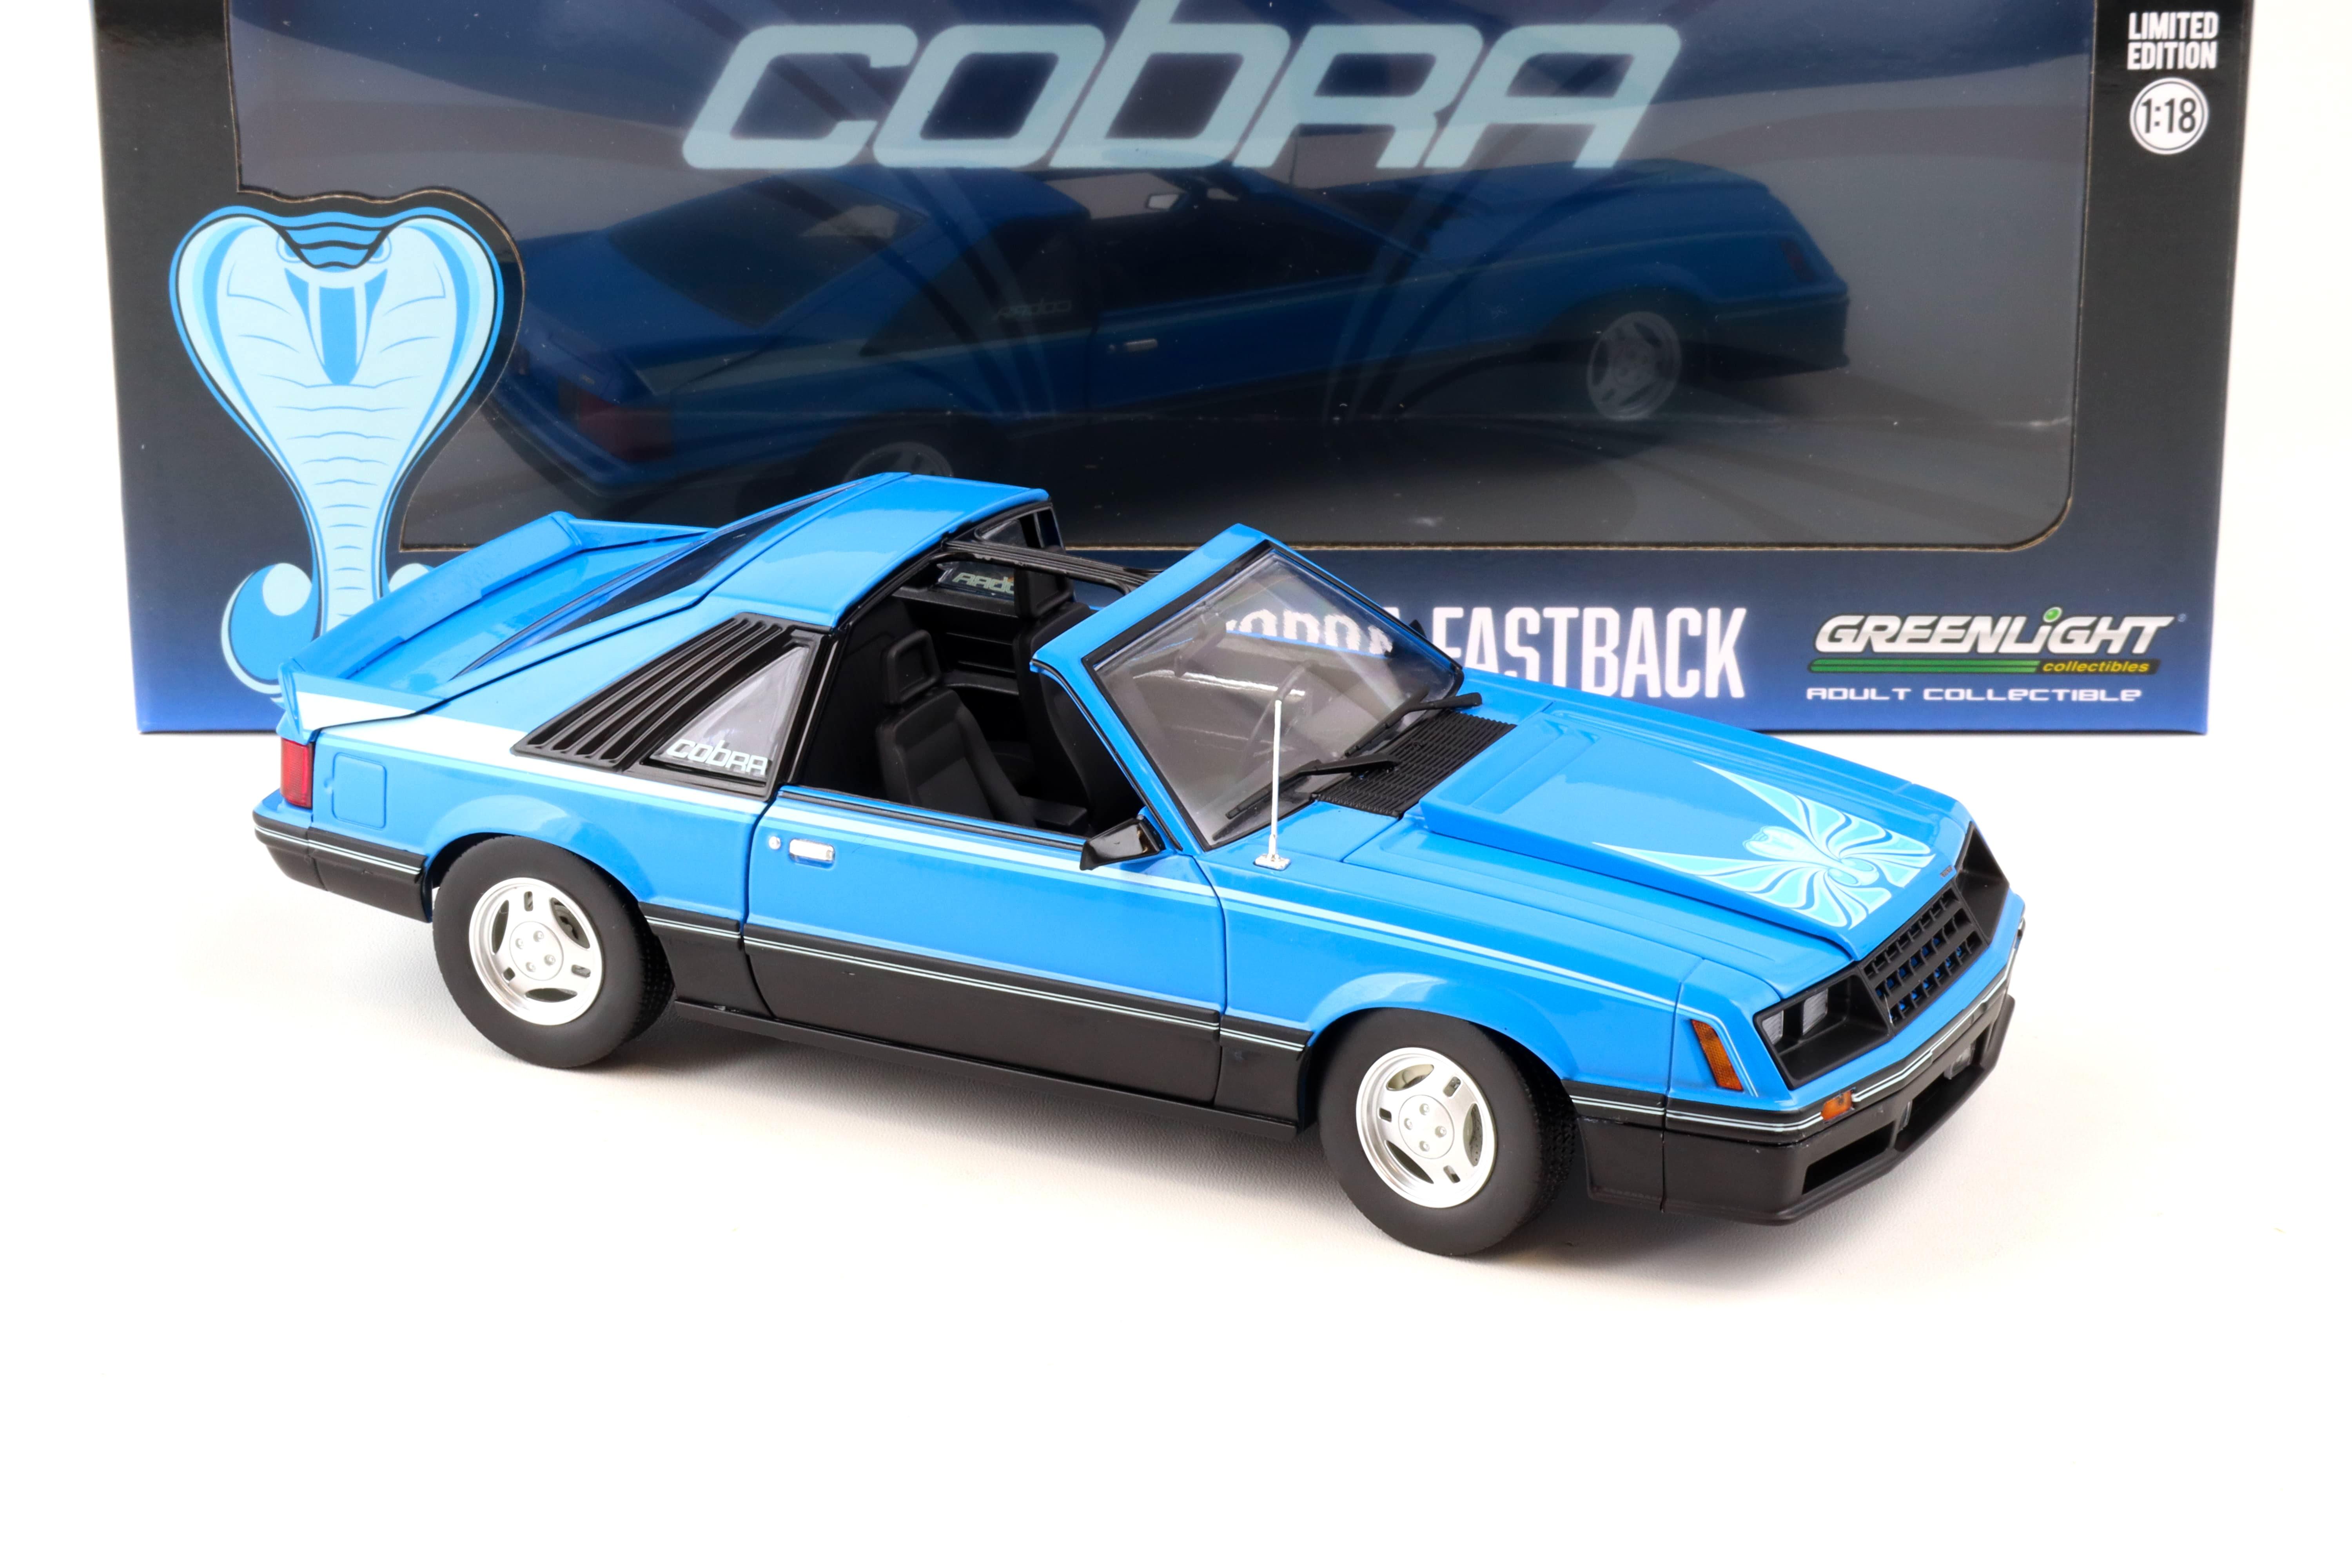 1:18 Greenlight 1981 Ford Mustang Cobra Fastback T-Top medium blue